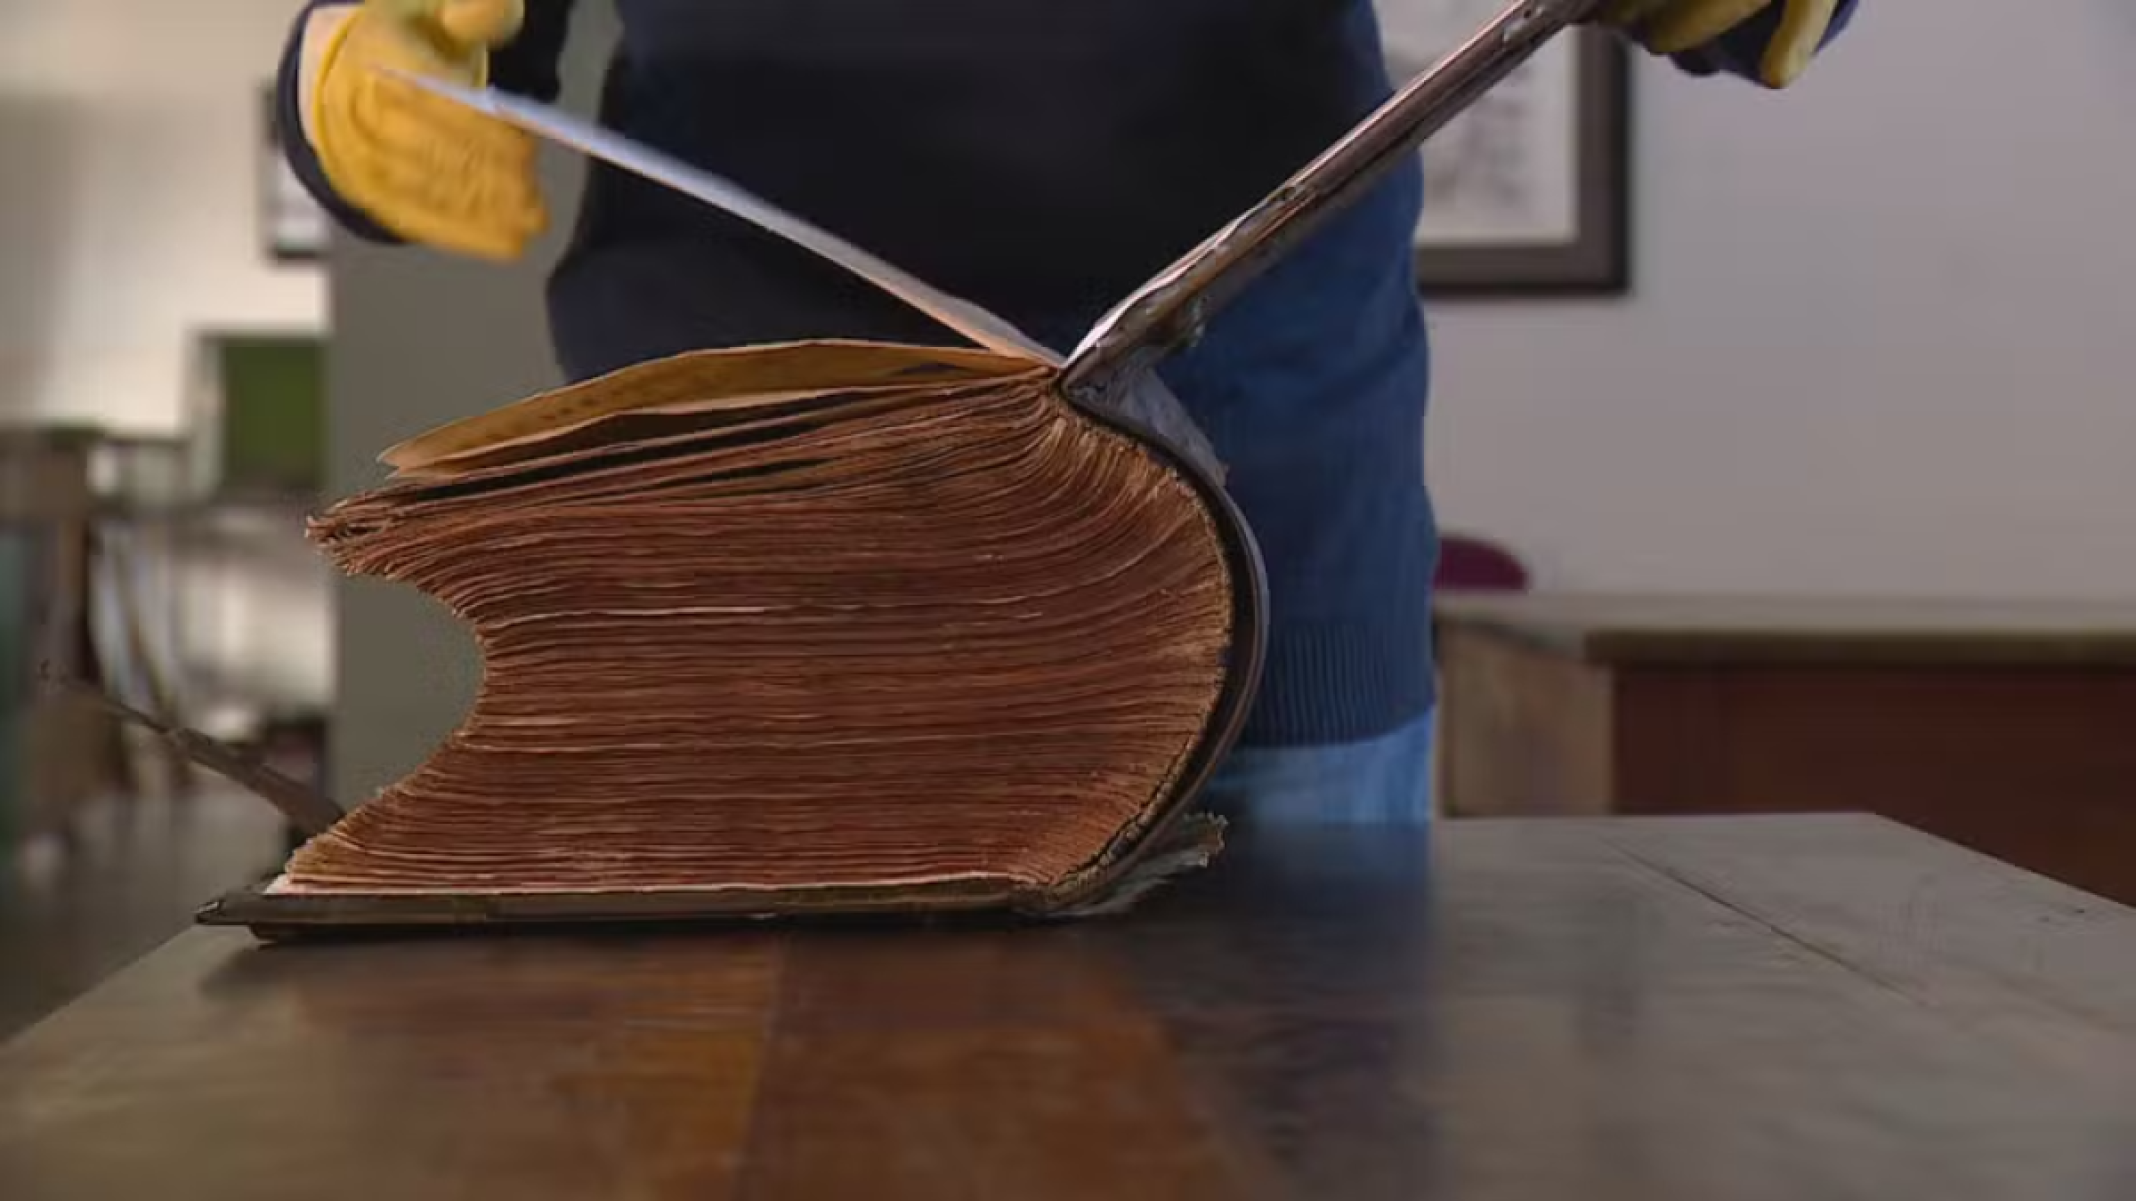 Bíblia de 250 anos sai ilesa de enchente no RS